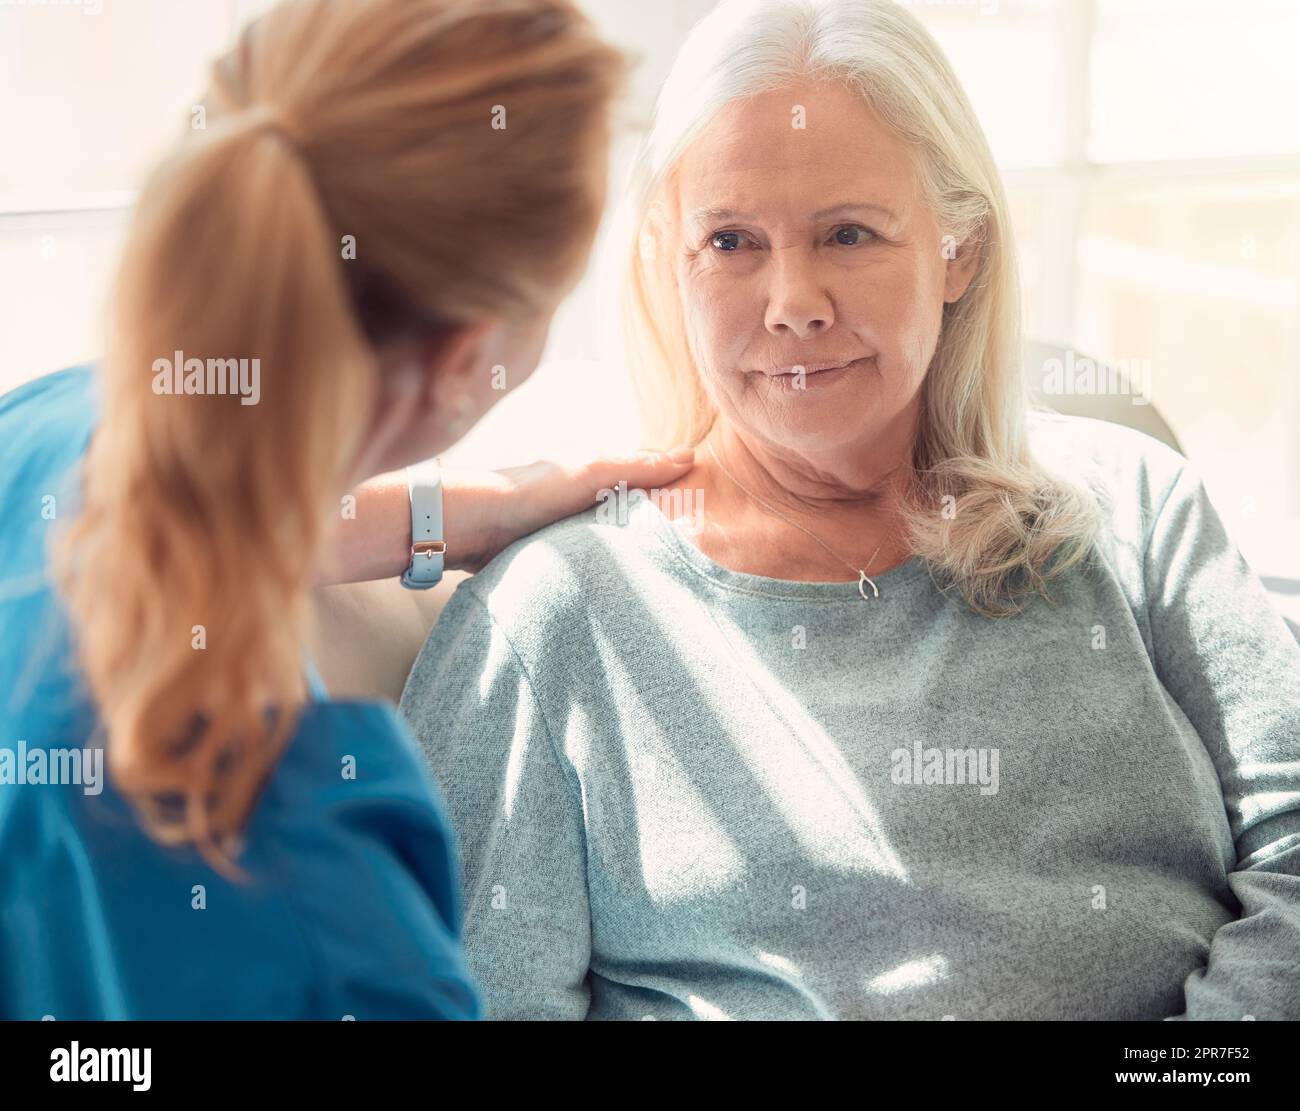 Aiutare gli altri a ottenere ciò di cui hanno bisogno. Shot di una donna anziana sostenuta dalla sua infermiera a casa. Foto Stock